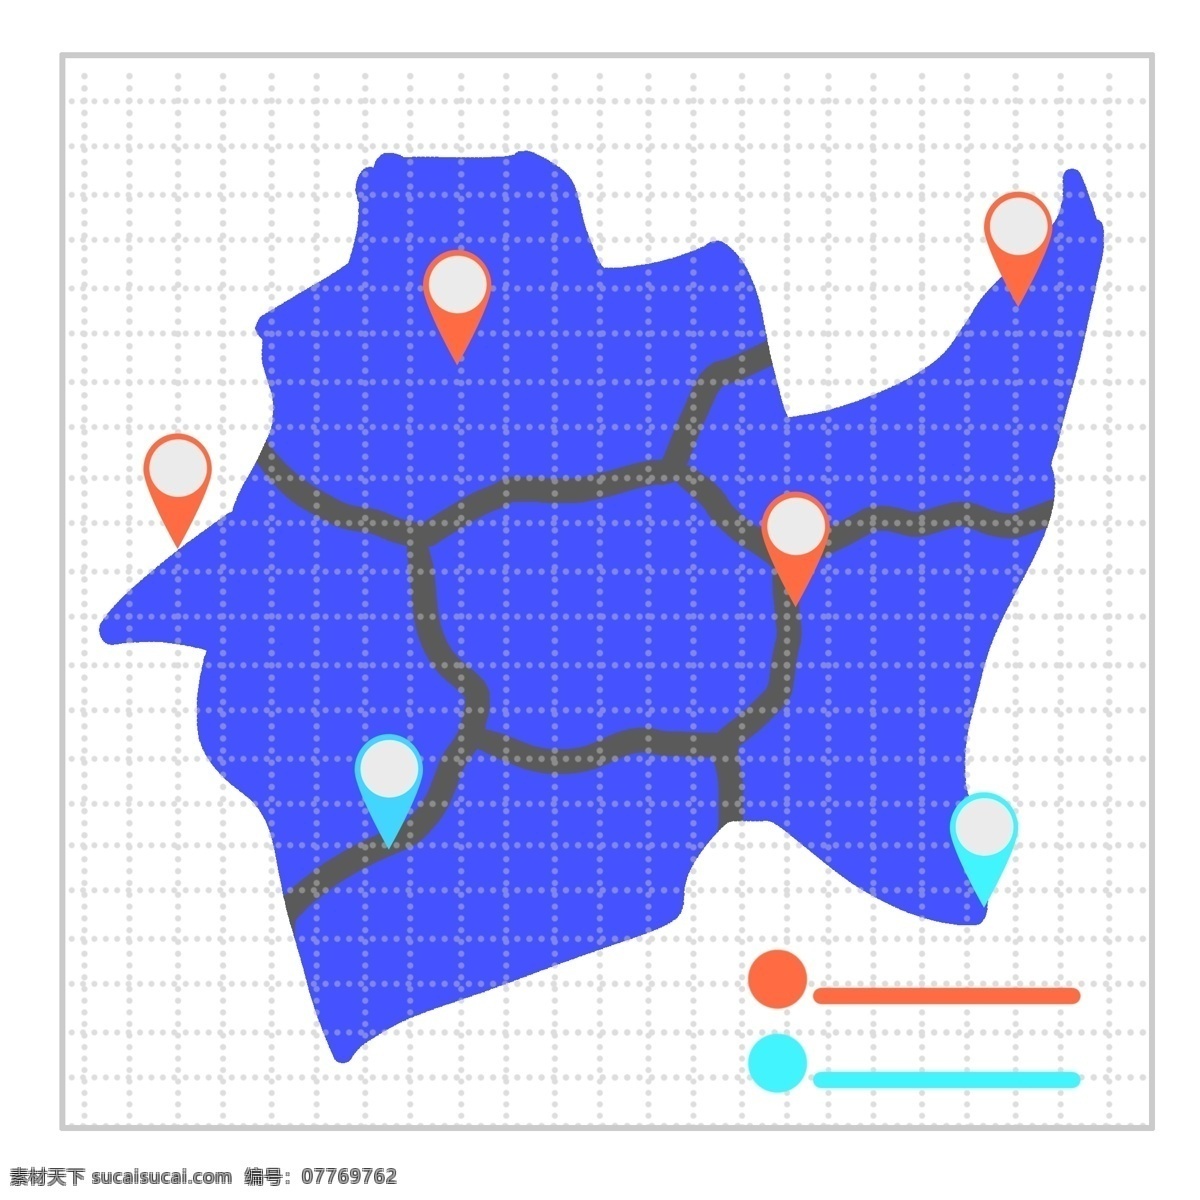 卡通 蓝色 地图 图表 蓝色图表 地图图表 橙色图表 绿色图表 简约的图表 创意图表 小清新图表 卡通插图